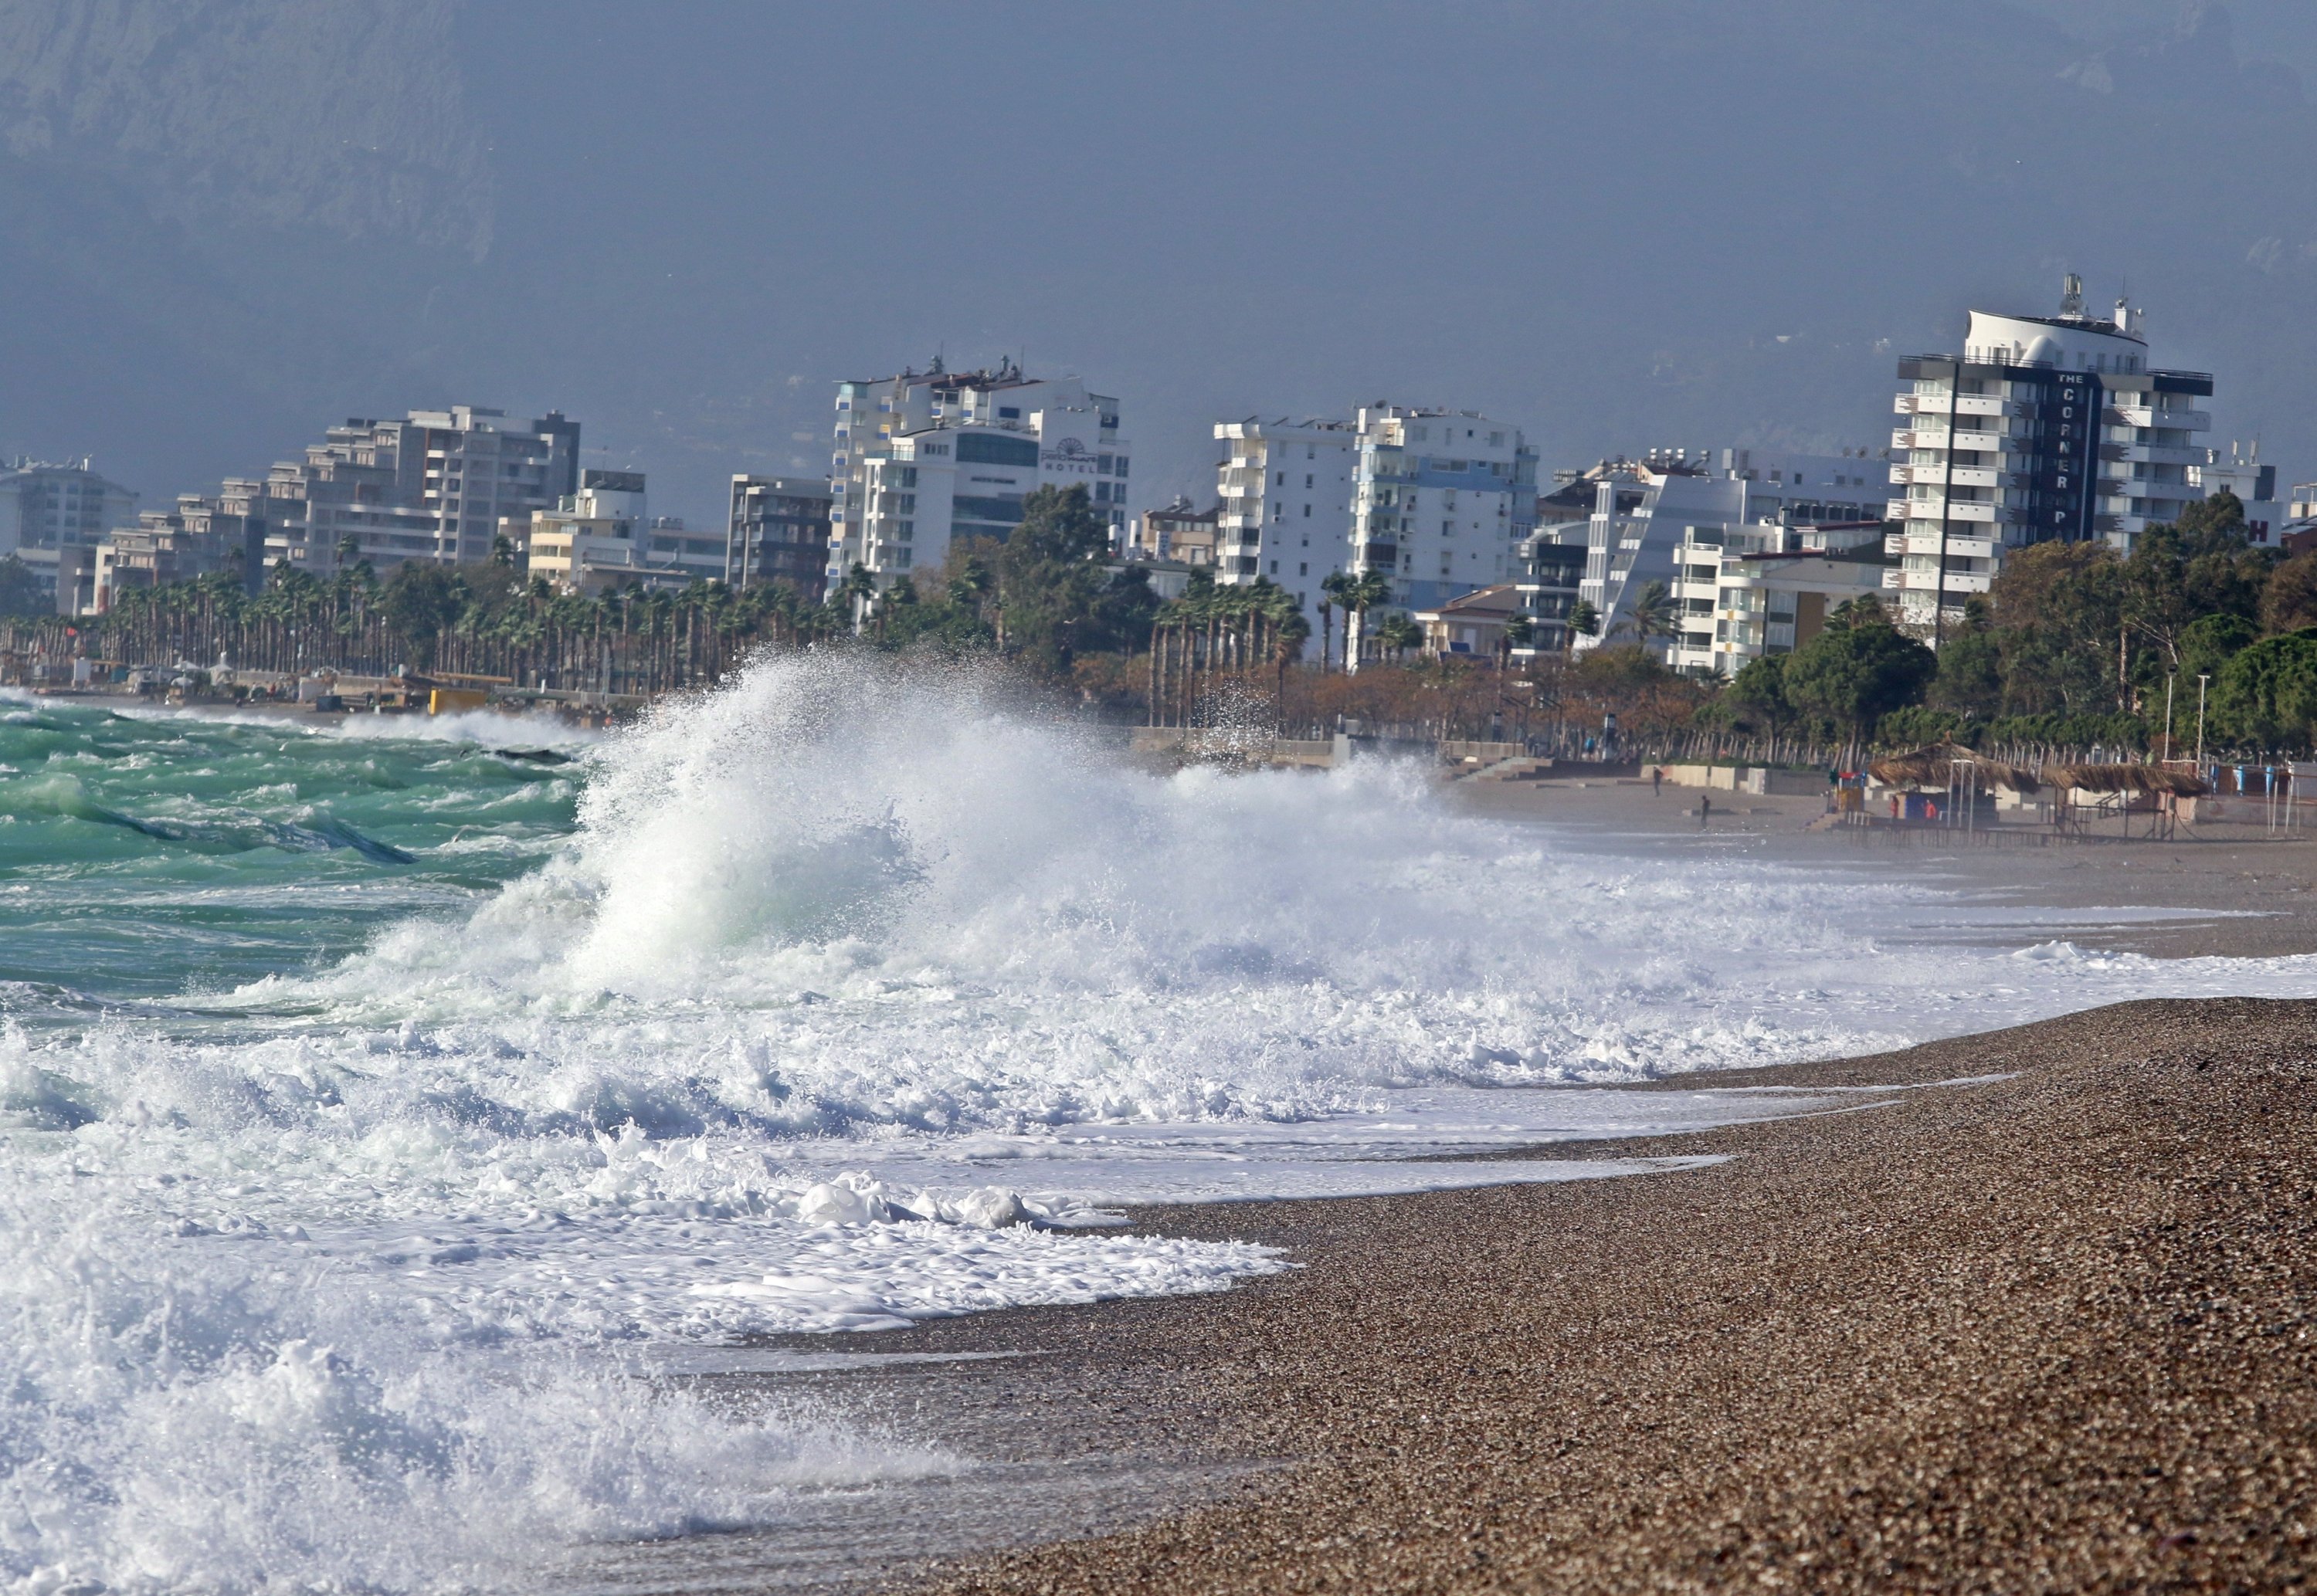 3meter high tsunami may hit Turkish coasts, expert warns Daily Sabah